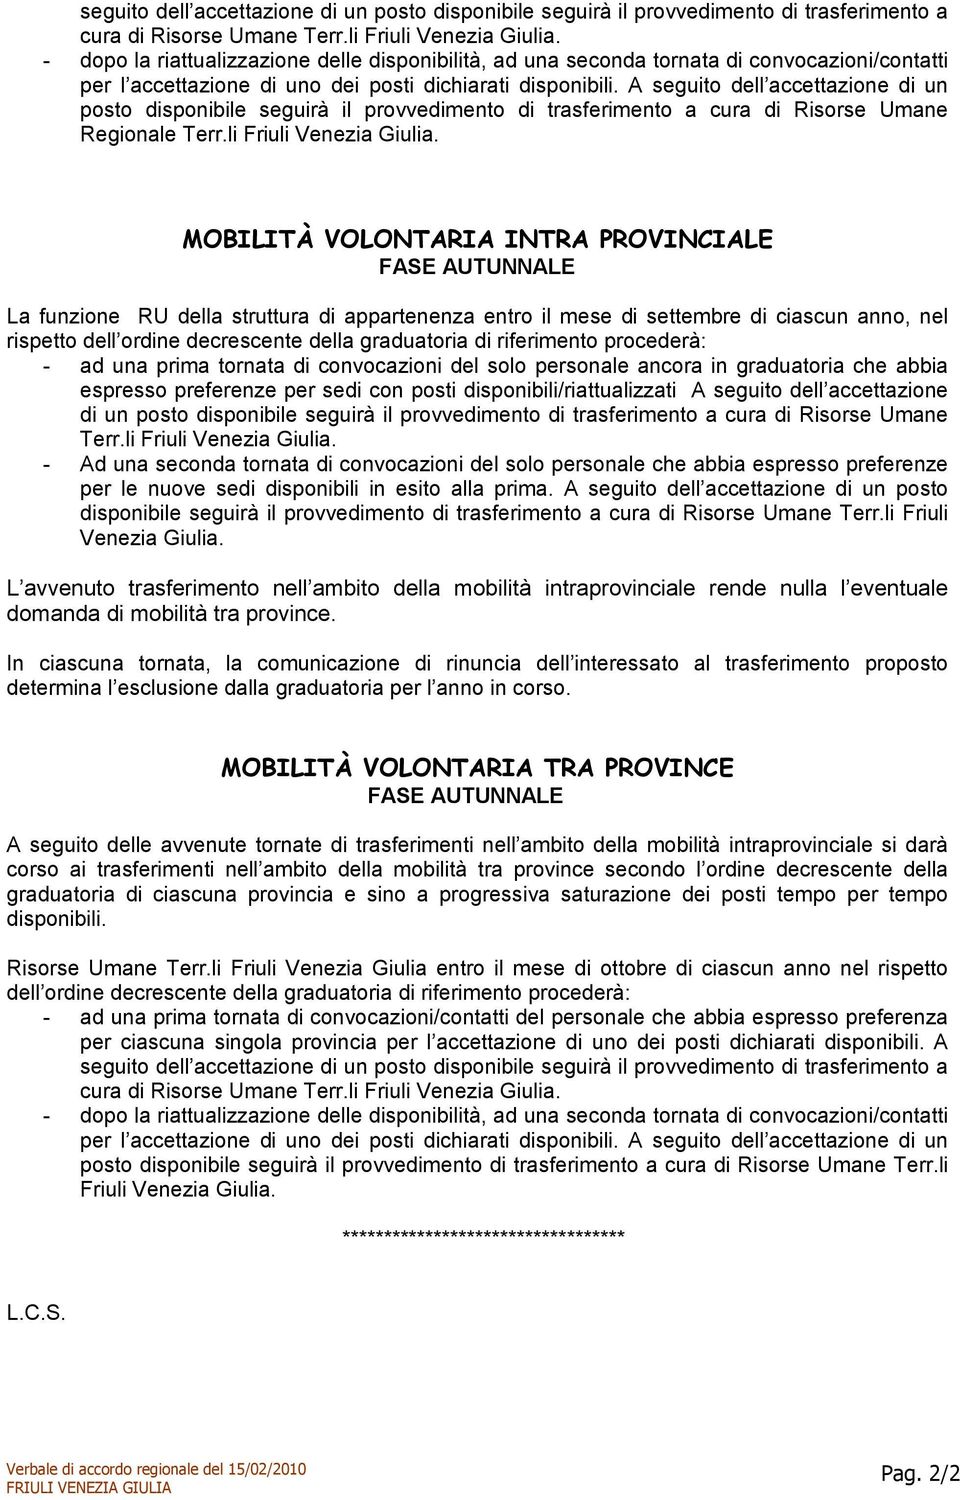 A seguit dell accettazine di un pst dispnibile seguirà il prvvediment di trasferiment a cura di Risrse Umane Reginale Terr.li Friuli Venezia Giulia.